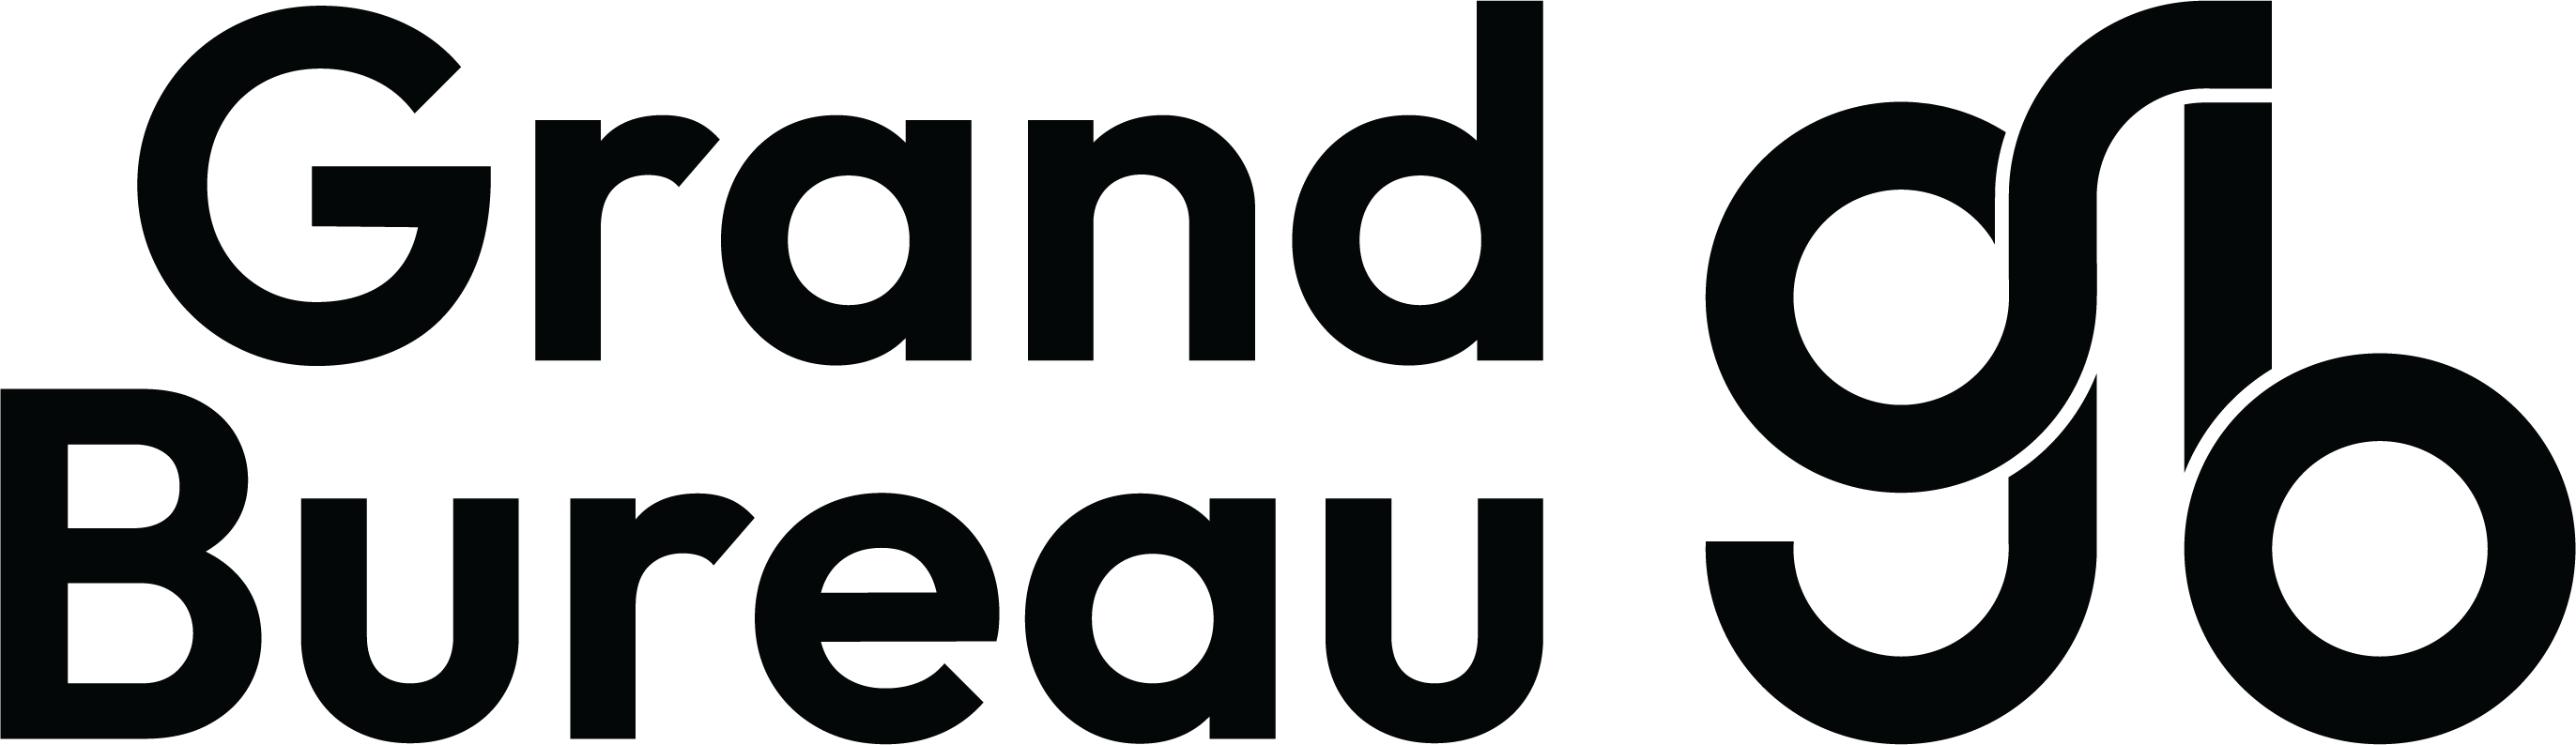 Logo primaire variation 1 Grand Bureau noir